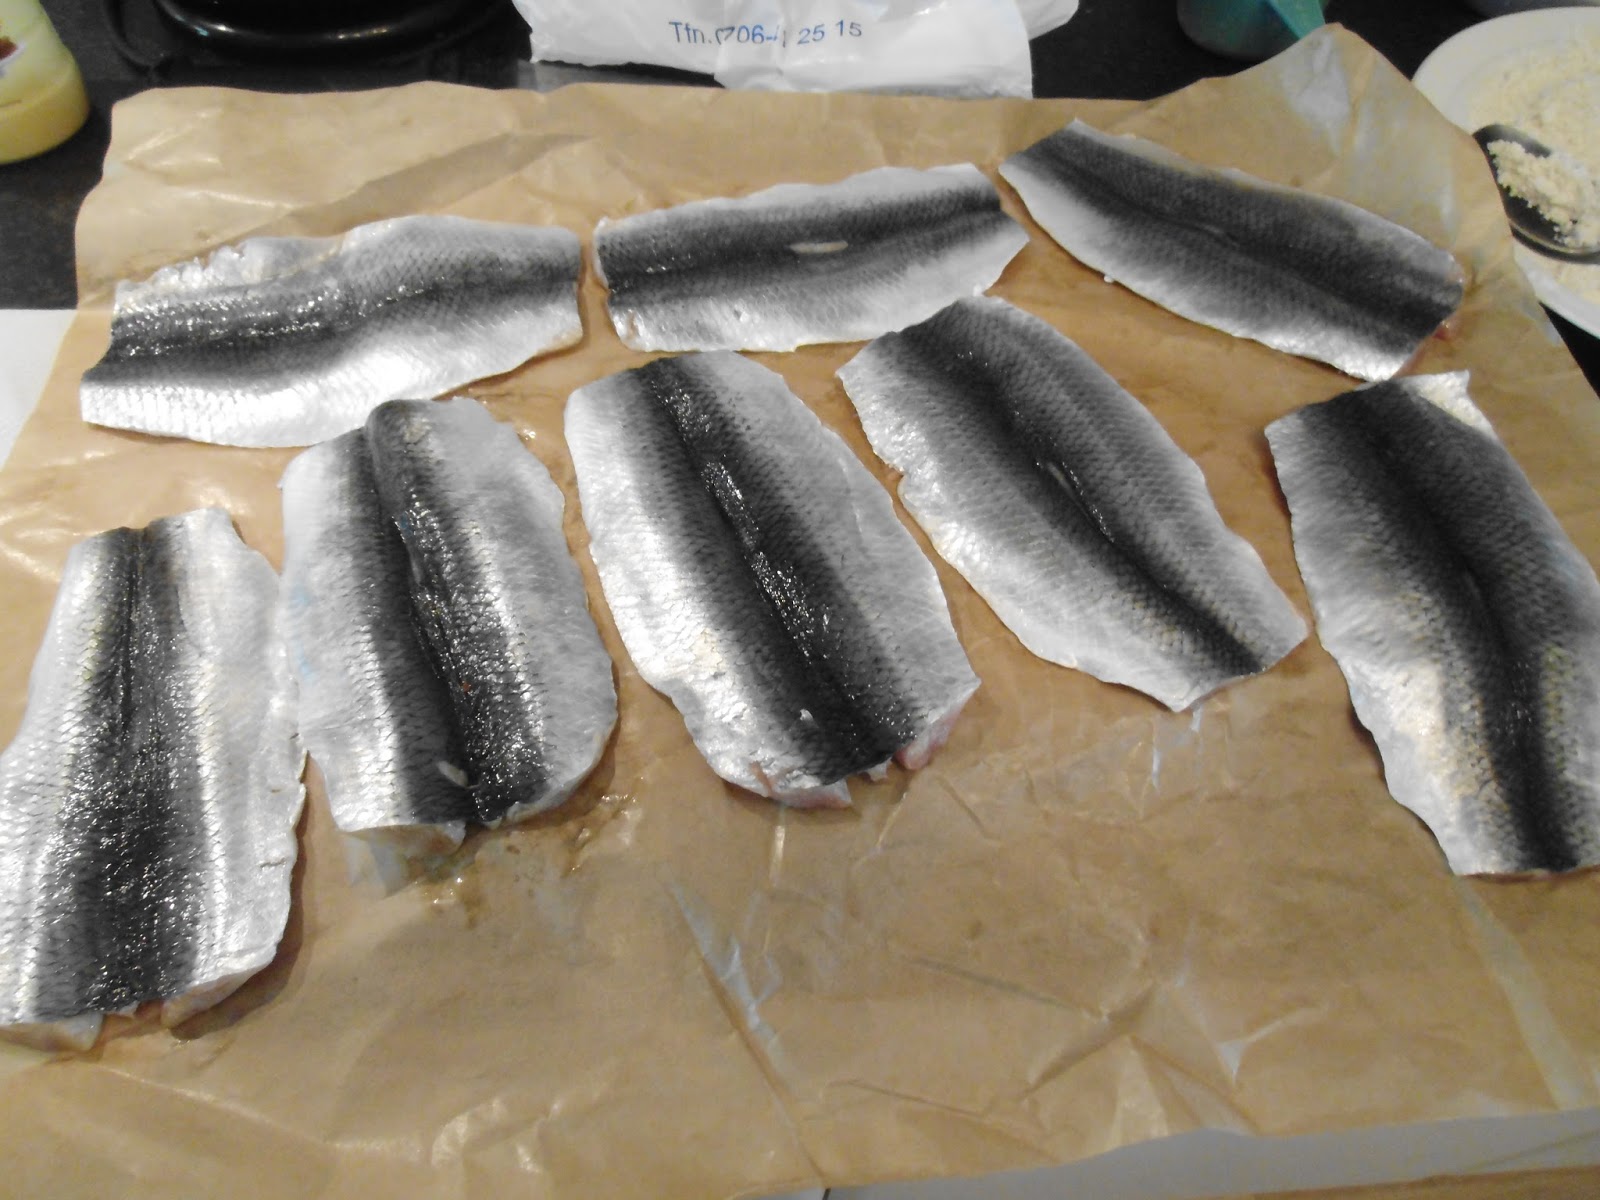 Swedish food - as we create it in Sweden: Fried herring (stekt sill)